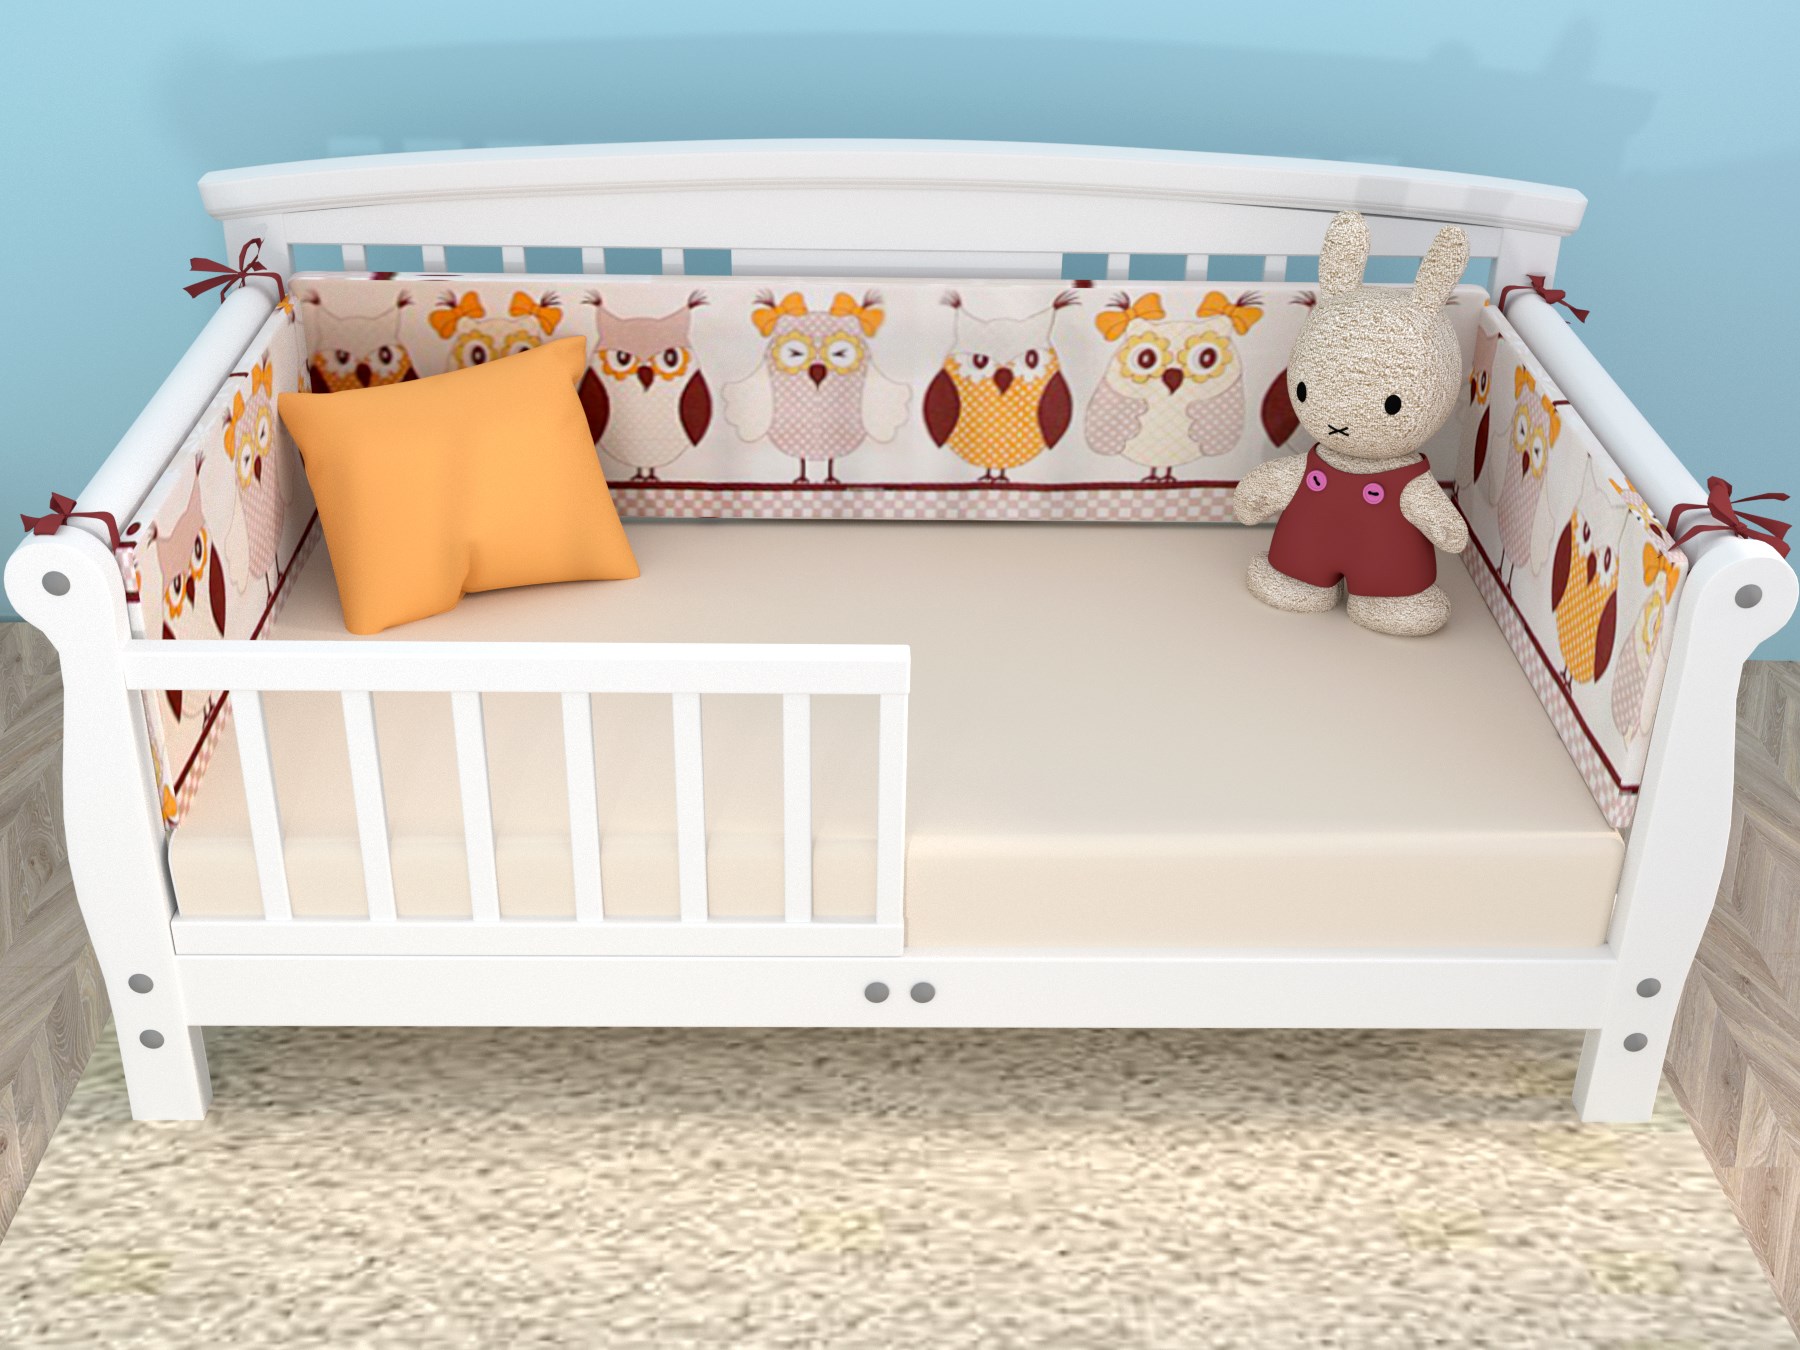 Бортик для кровати ребенка купить. Бортики в кровать 160х80. Детская кровать с бортиком. Кровать малыш с бортиком. Бортик на кровать для детей.